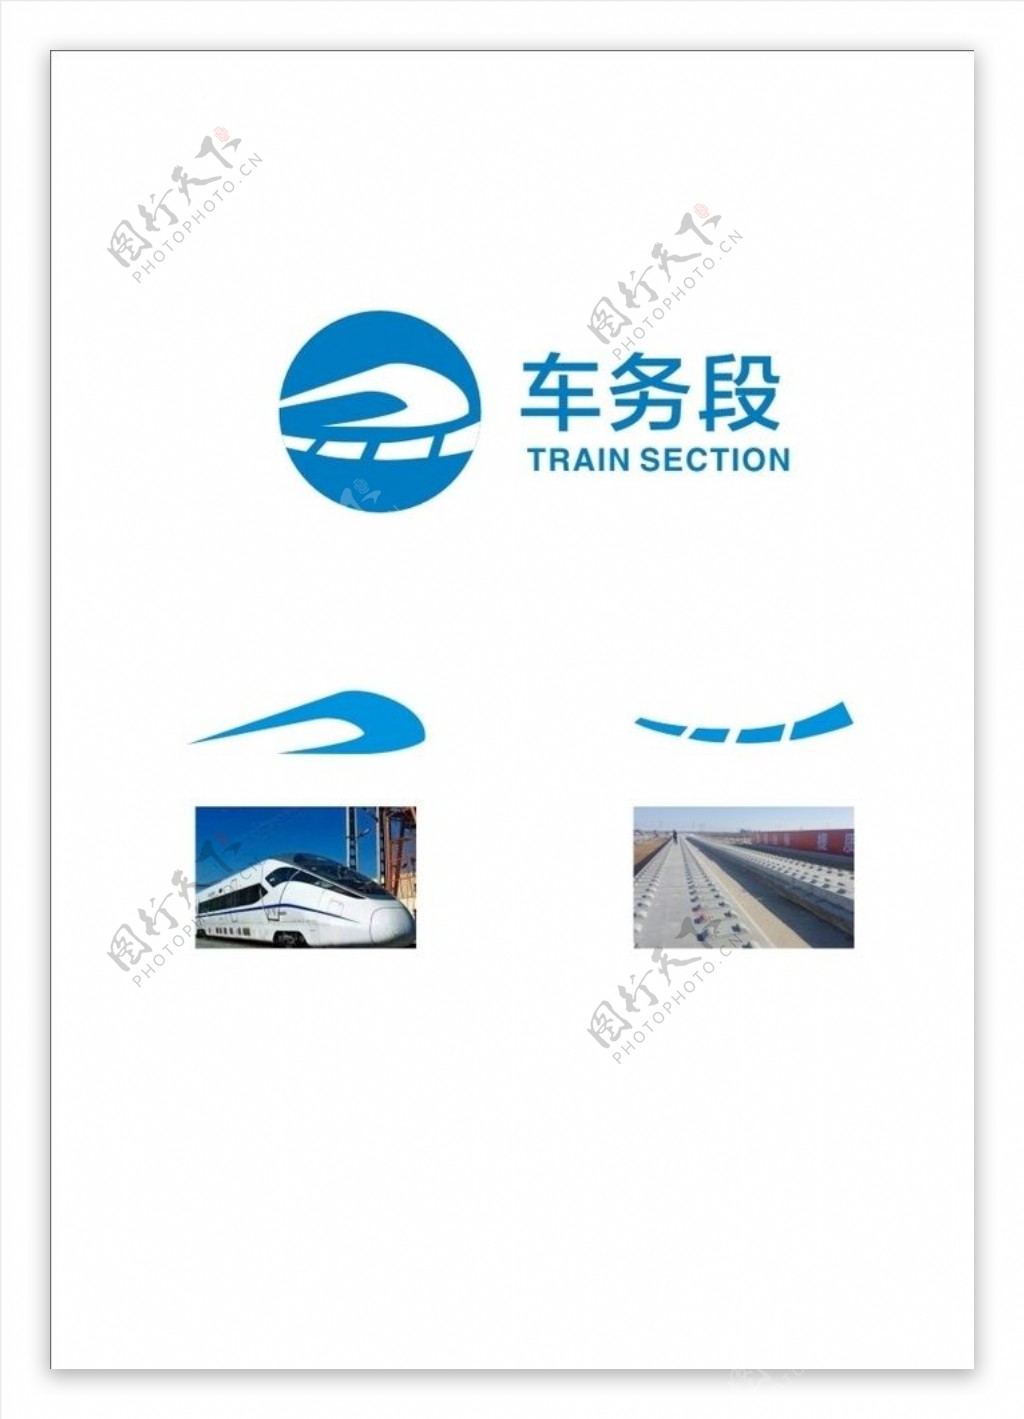 高铁logo